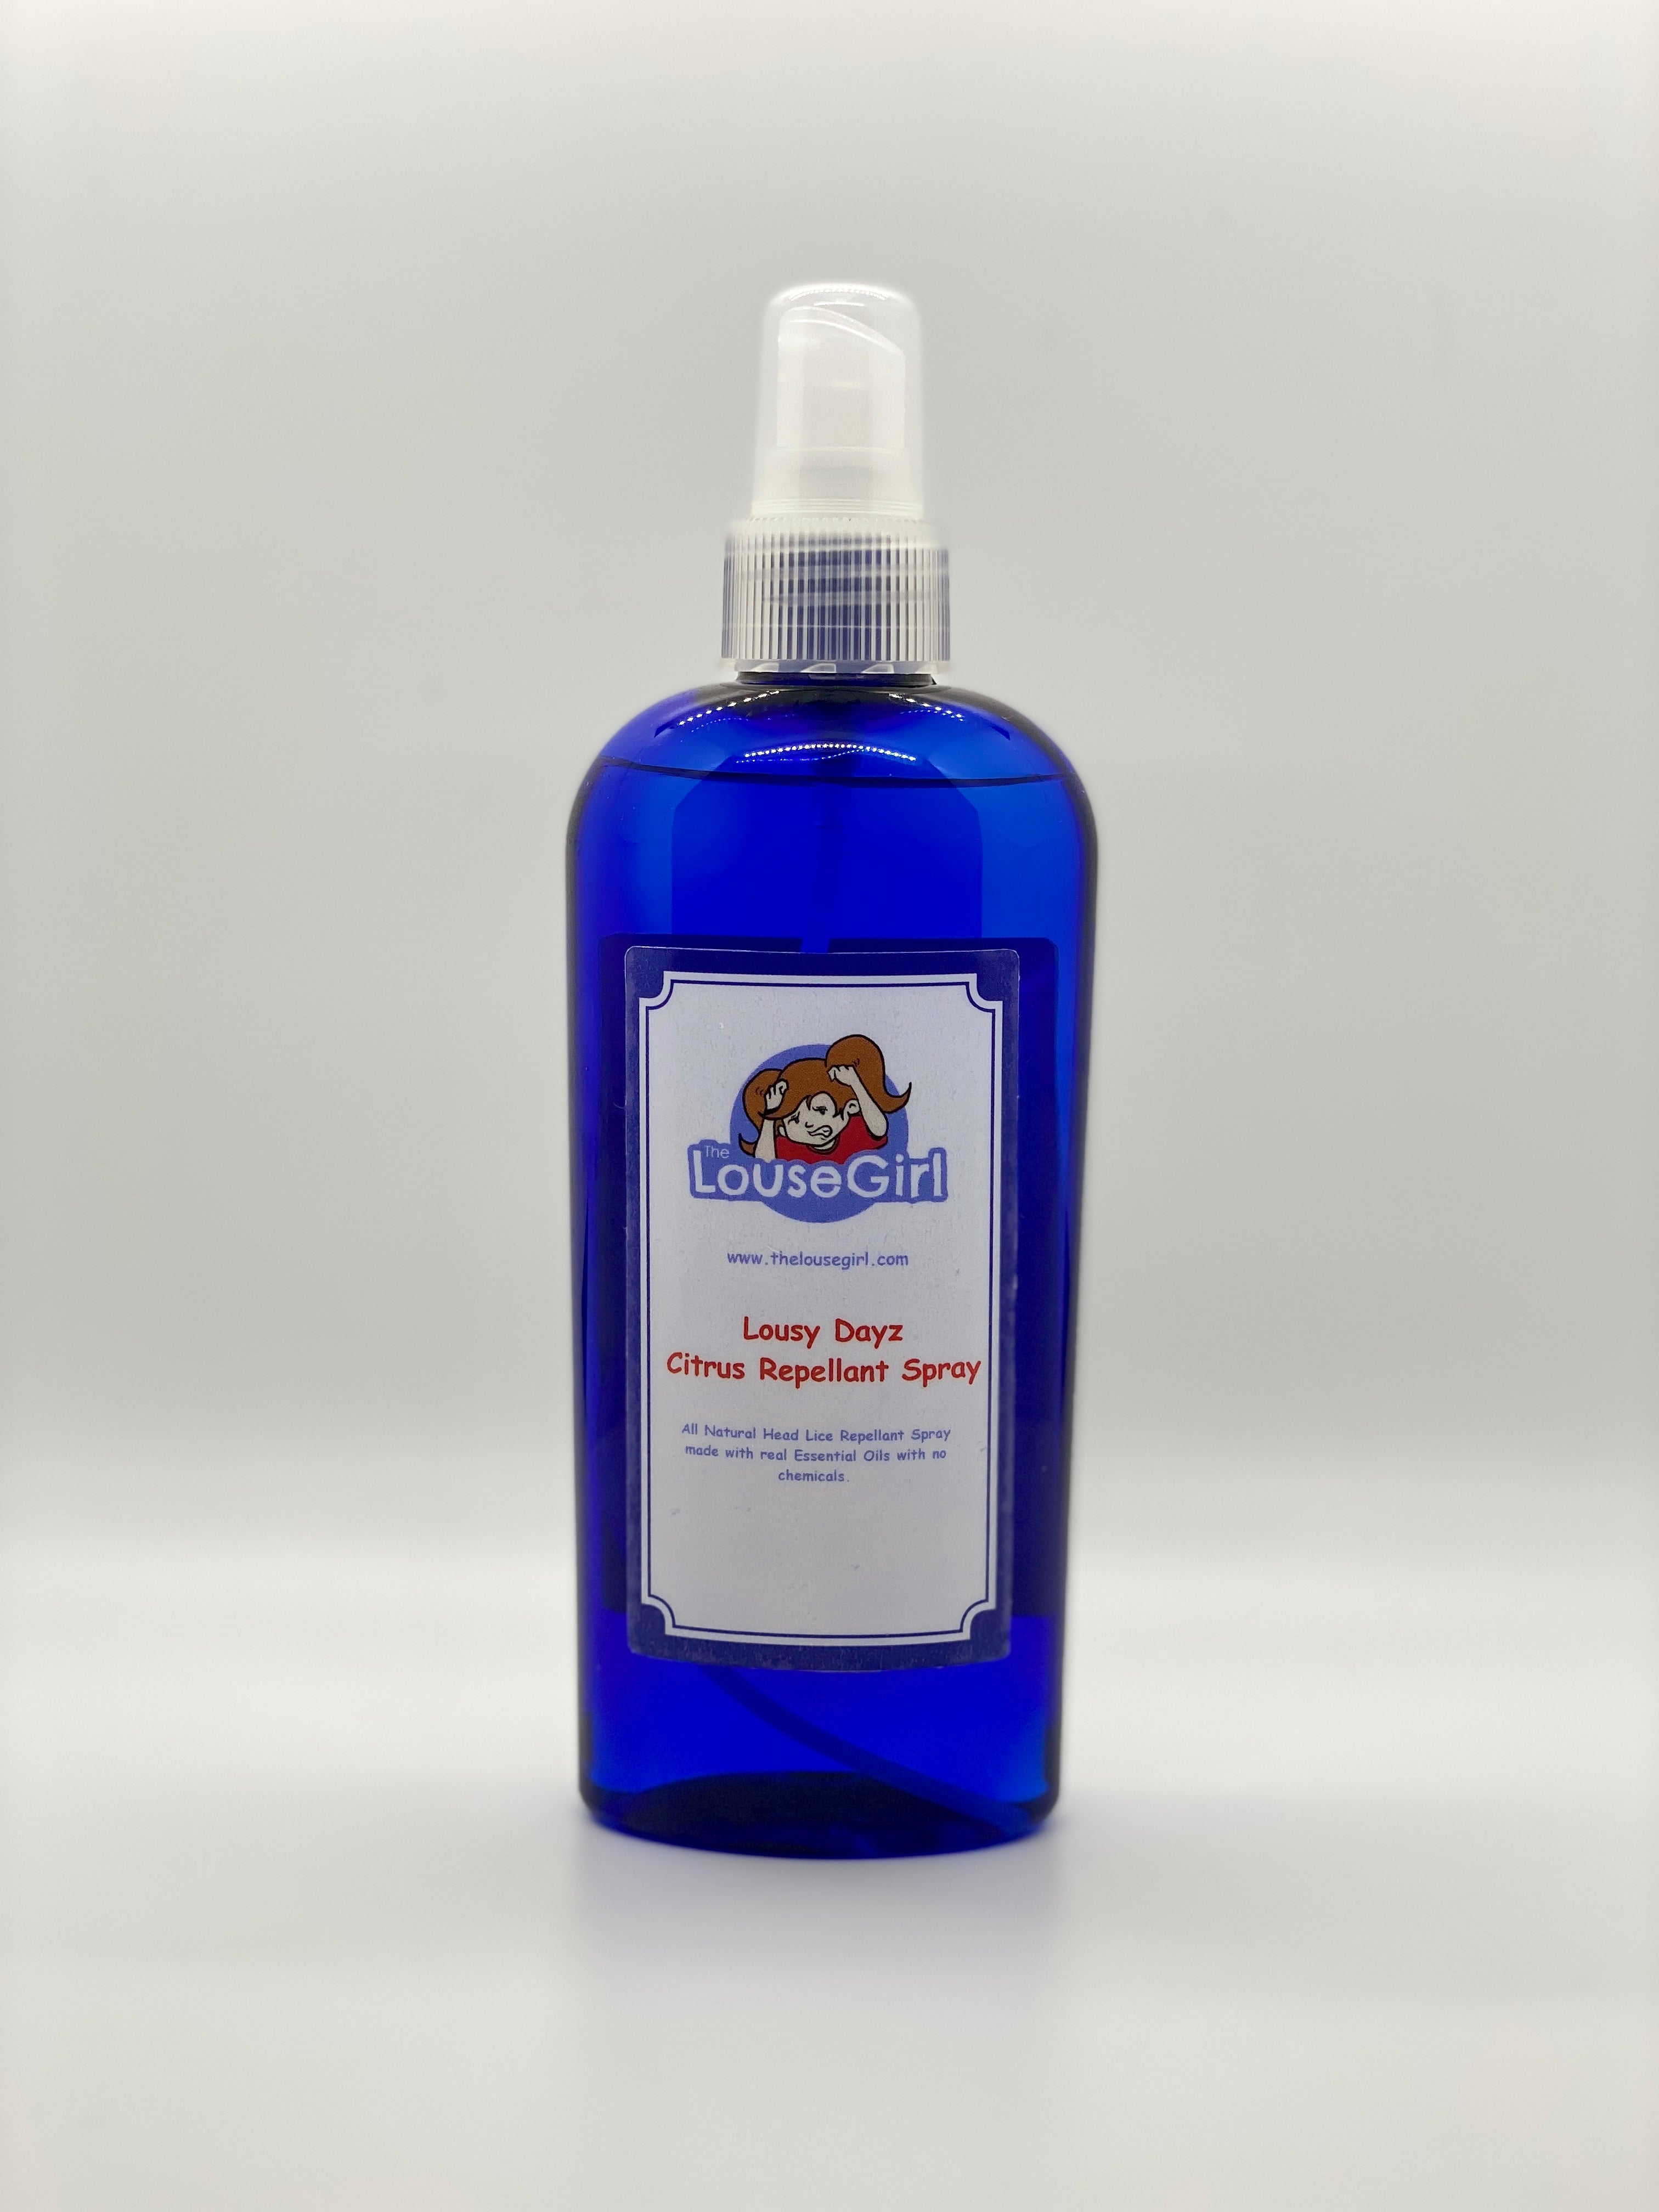 Healr Spray Repelente Piojos Tratamiento con Árbol de Te para Niños y  Adultos, 100ml - Locion Antipiojos y Liendres: Nutre y Protege - Spray  Arbol de